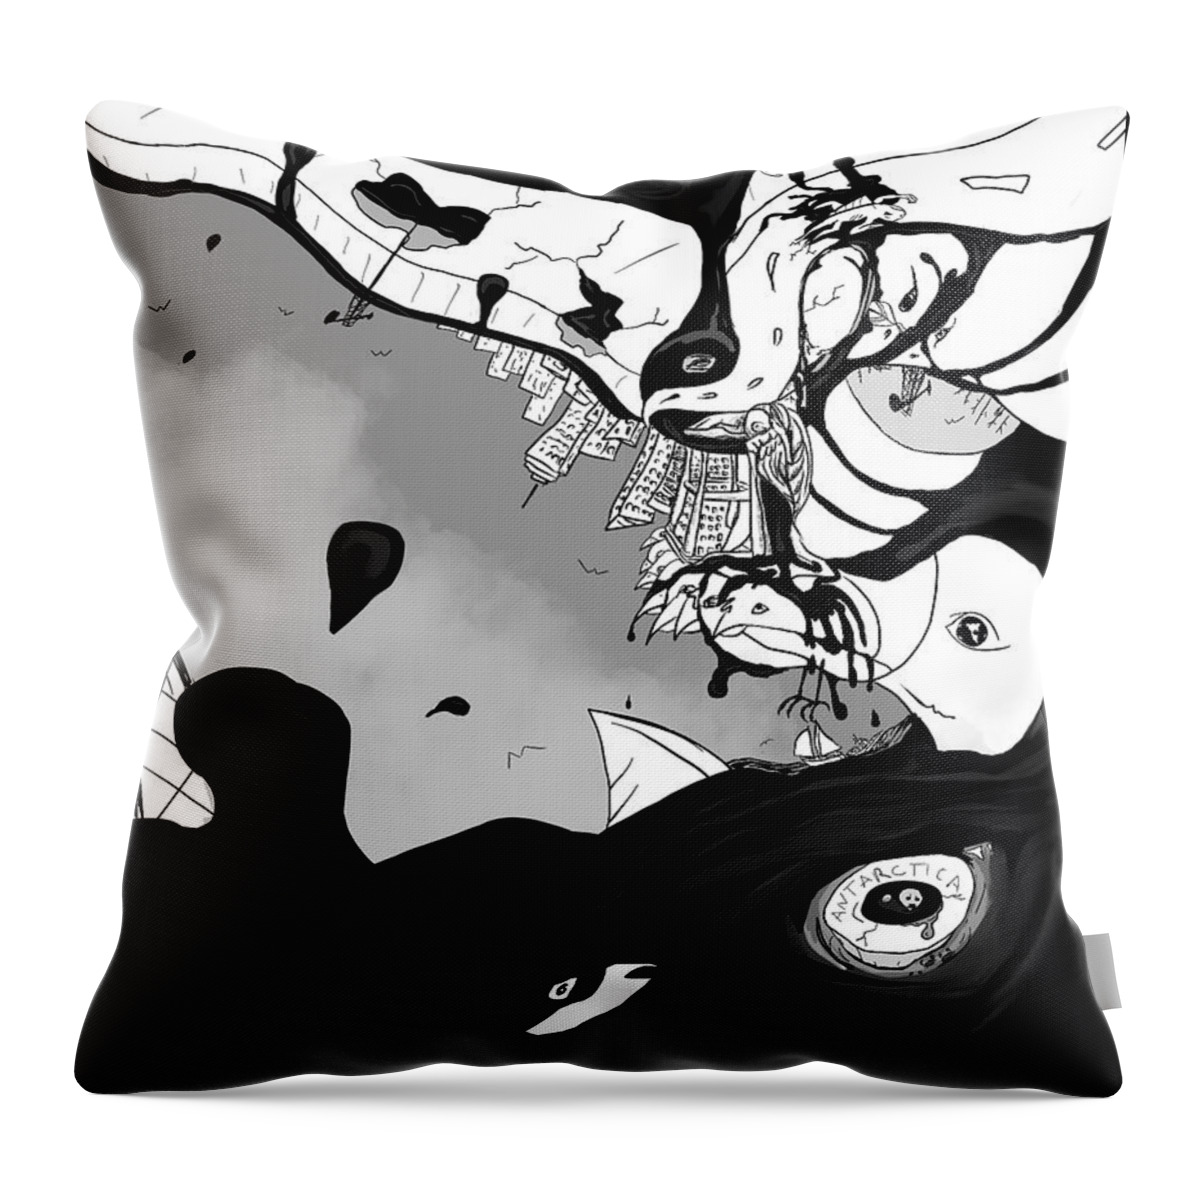 Bird Throw Pillow featuring the digital art Oil Spill by Craig Tilley